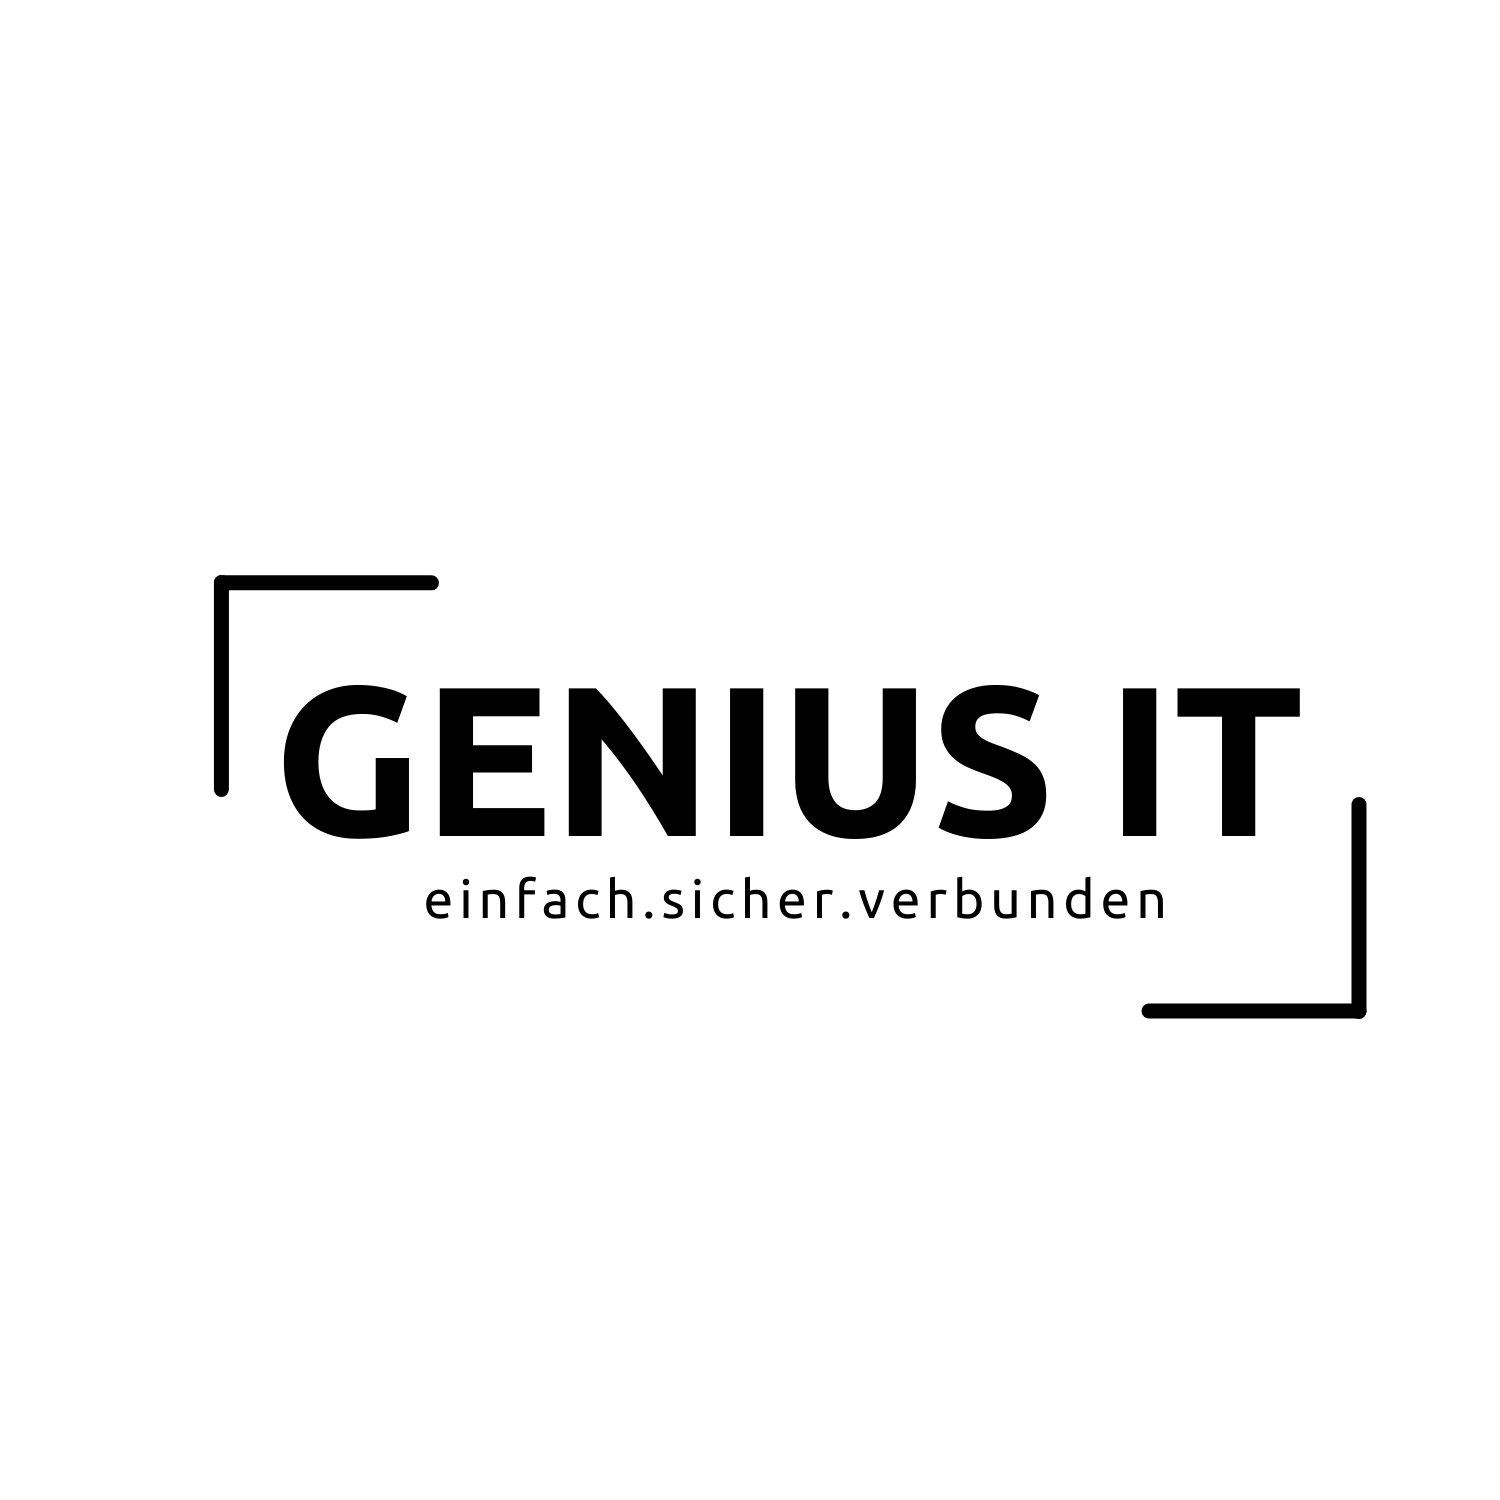 Genius IT GmbH